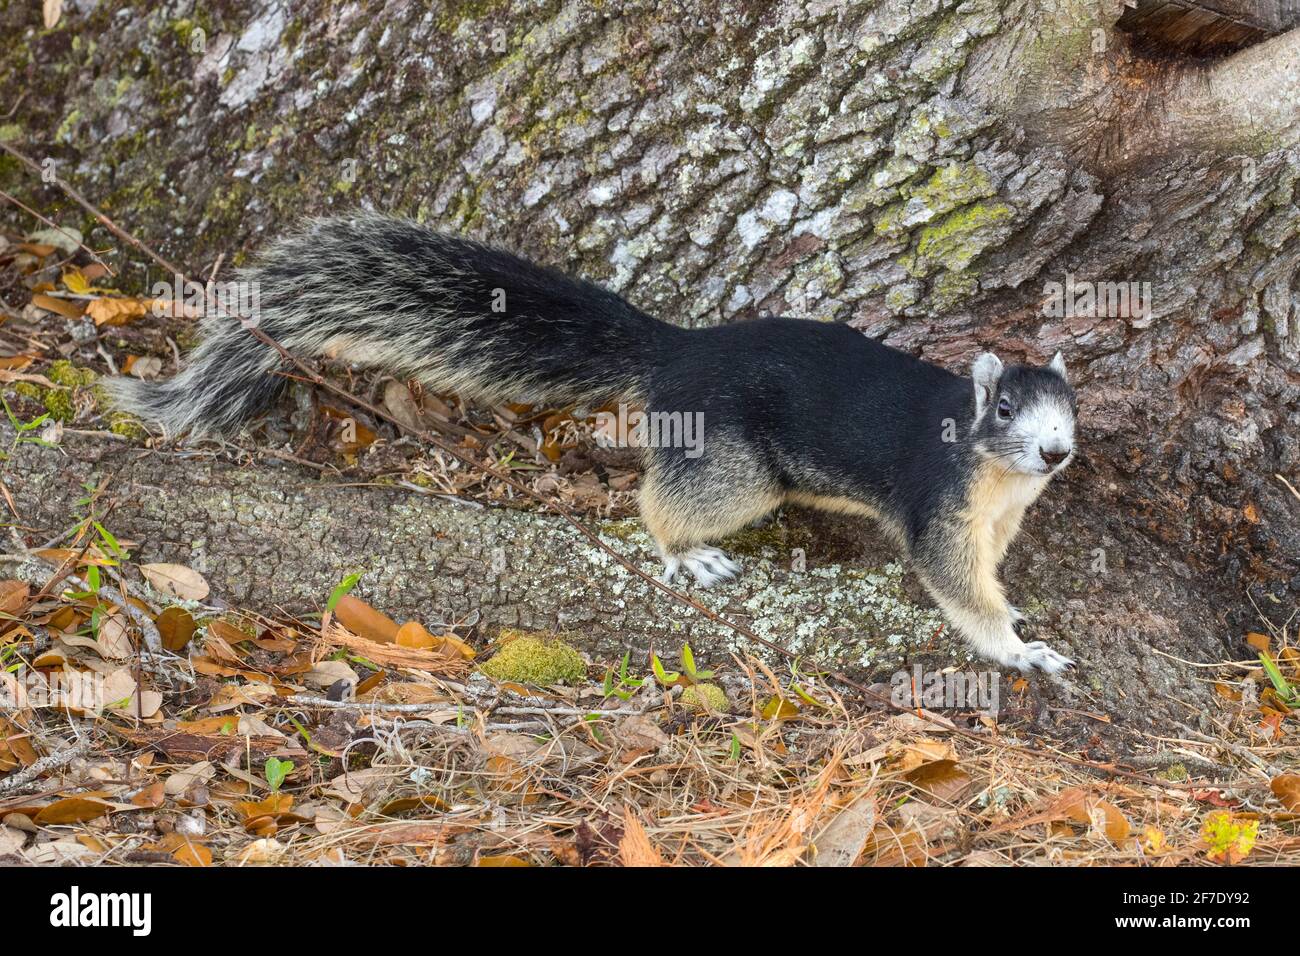 Ein großes Zypressenfuchs-Eichhörnchen, Sciurus niger avicennia, auf einer lebenden Eiche. Stockfoto